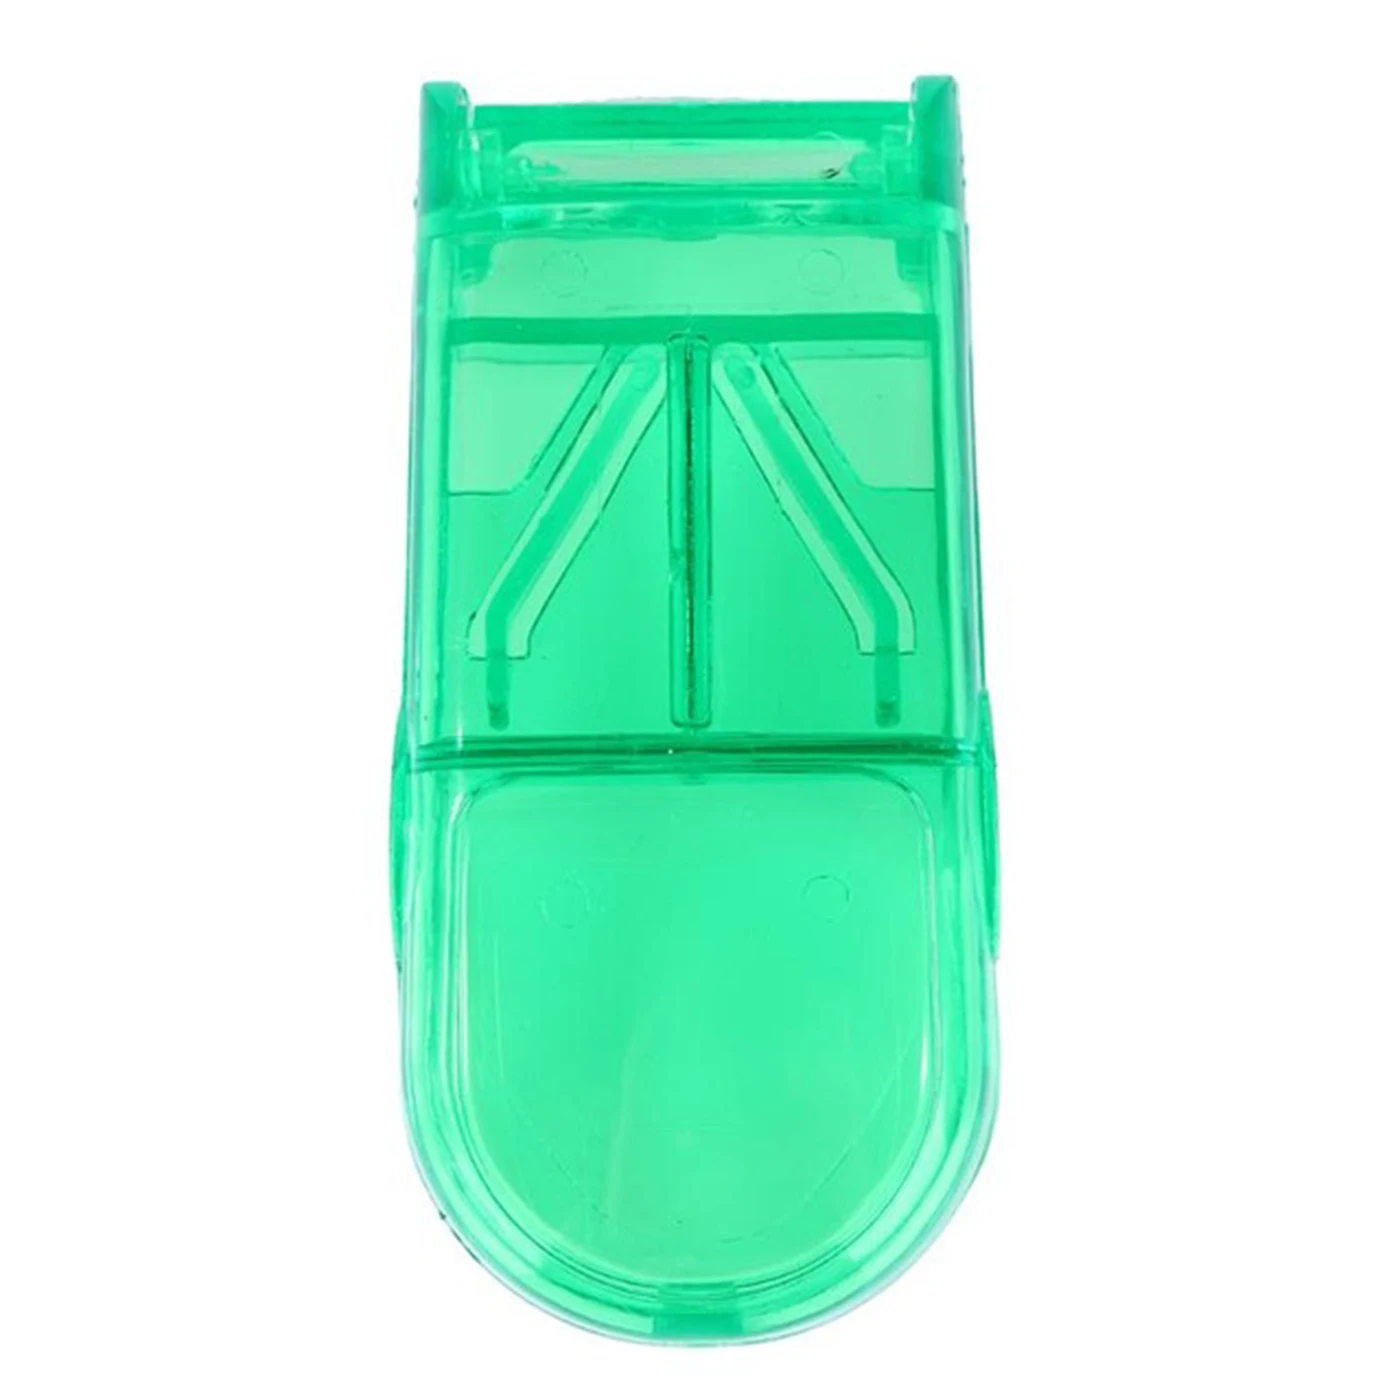 Лекарственное средство таблетки Cutter сплиттер Портативный делитель таблеток коробка нож для разрезания таблеток таблетки коробка для хранения приспособления для резки мини-таблетки коробка пилюля чехлы - Цвет: Green